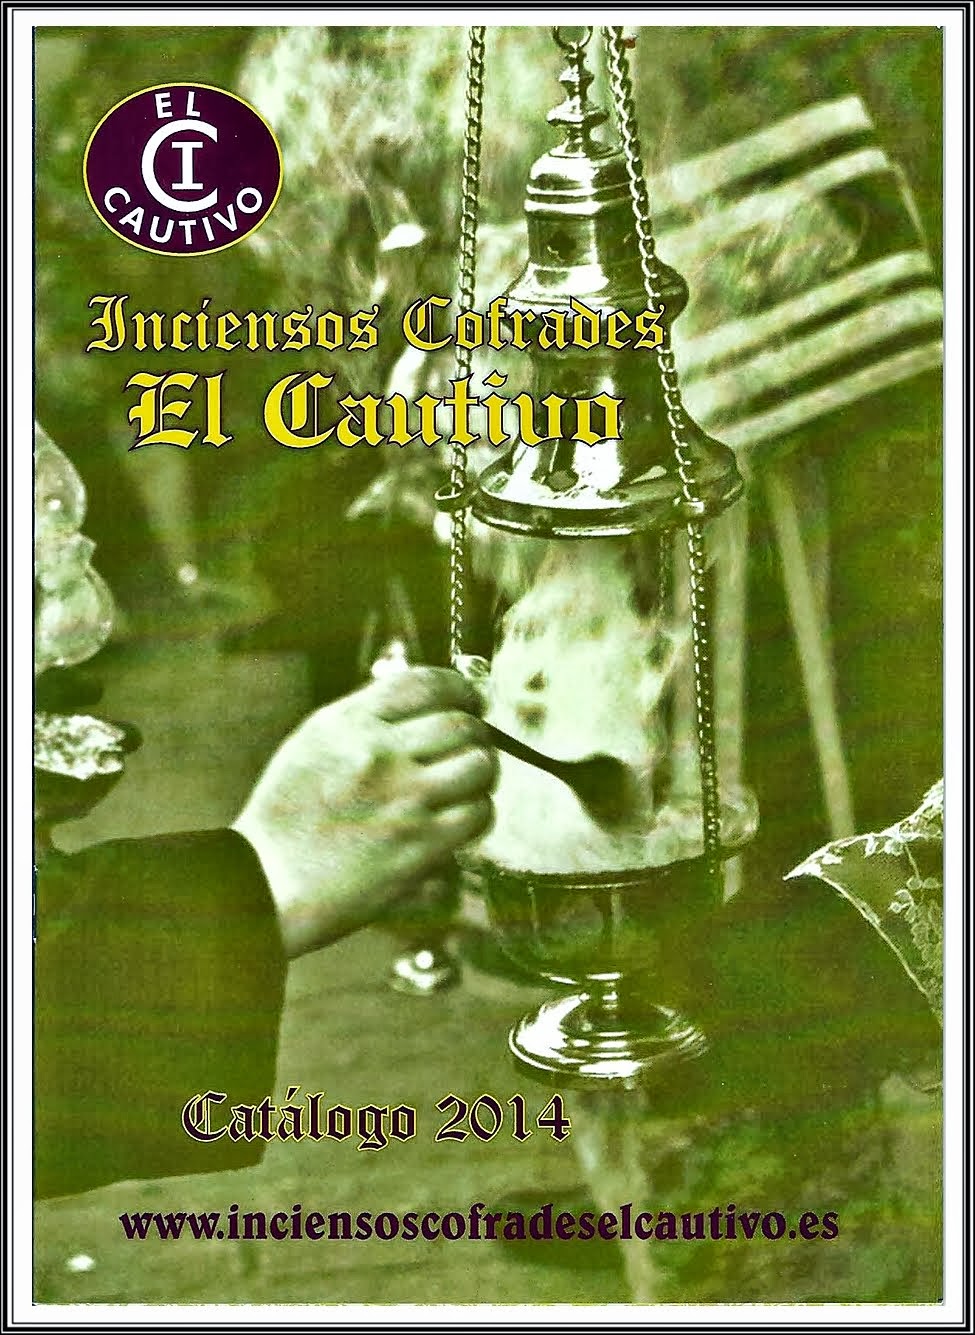 Catalogo de Inciensos Cofrades El Cautivo de 2014. CARMONA (Sevilla).